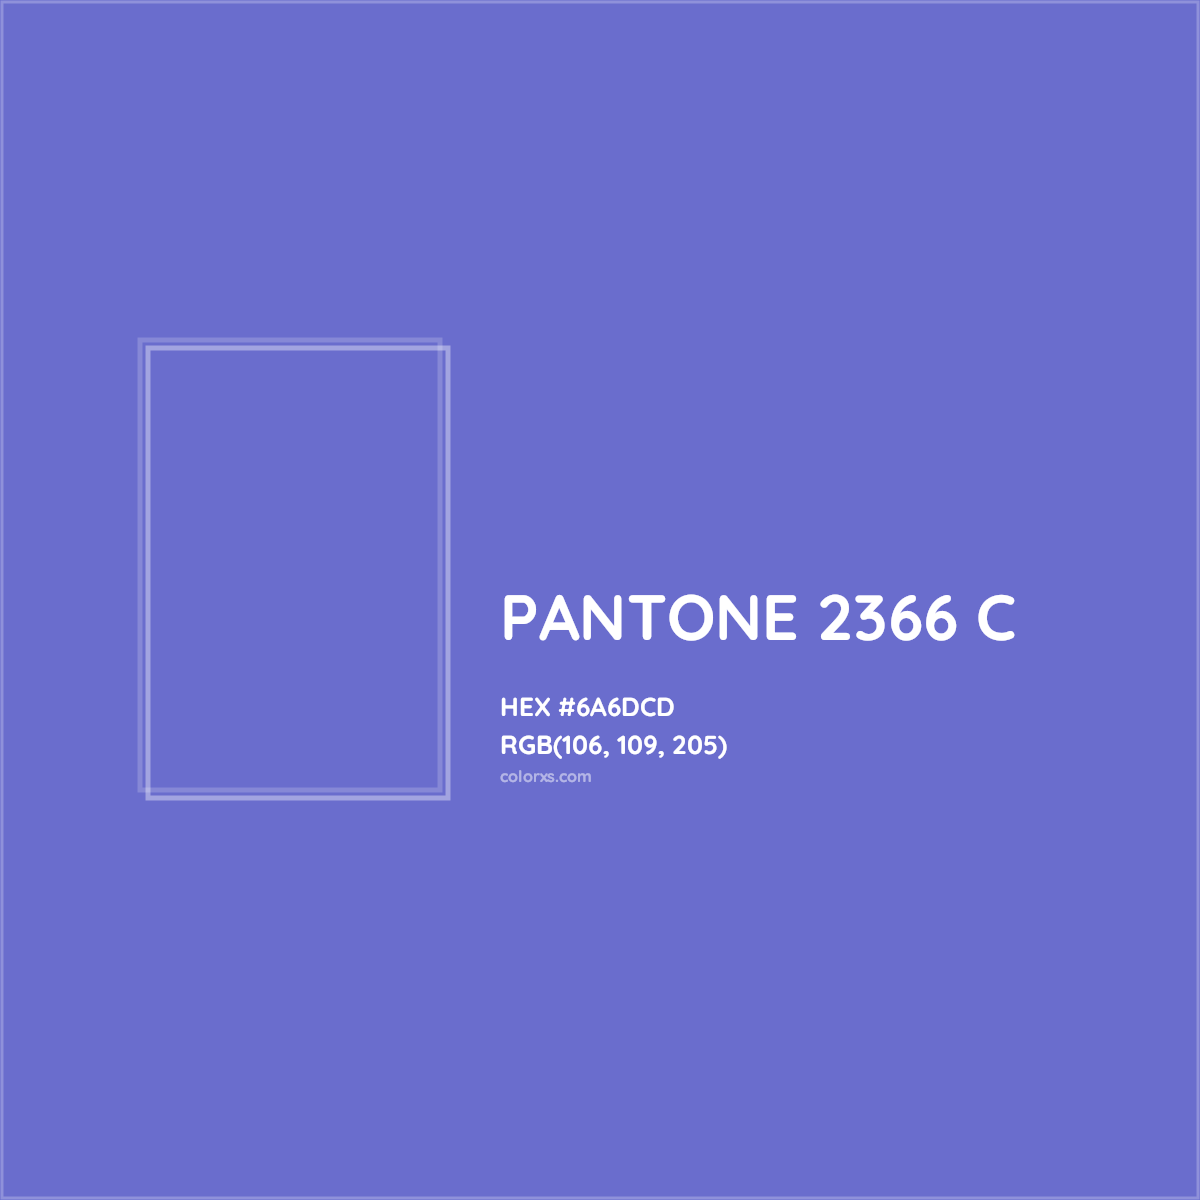 HEX #6A6DCD PANTONE 2366 C CMS Pantone PMS - Color Code